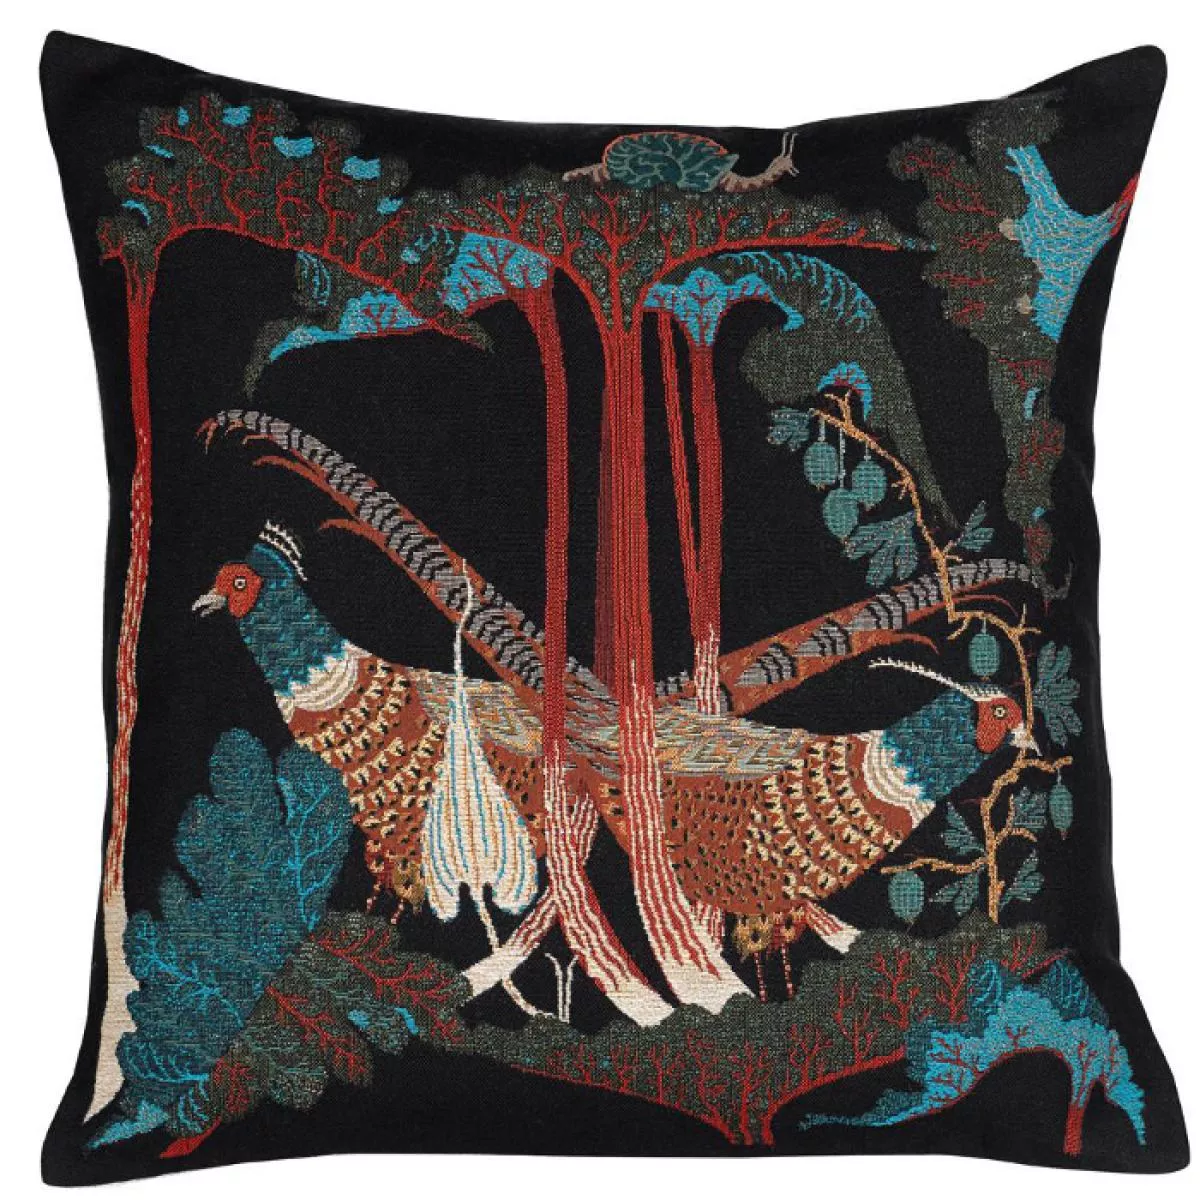 Velvet Cushion Sleeve "Pheasants & Rhubarbs" with Embroidery